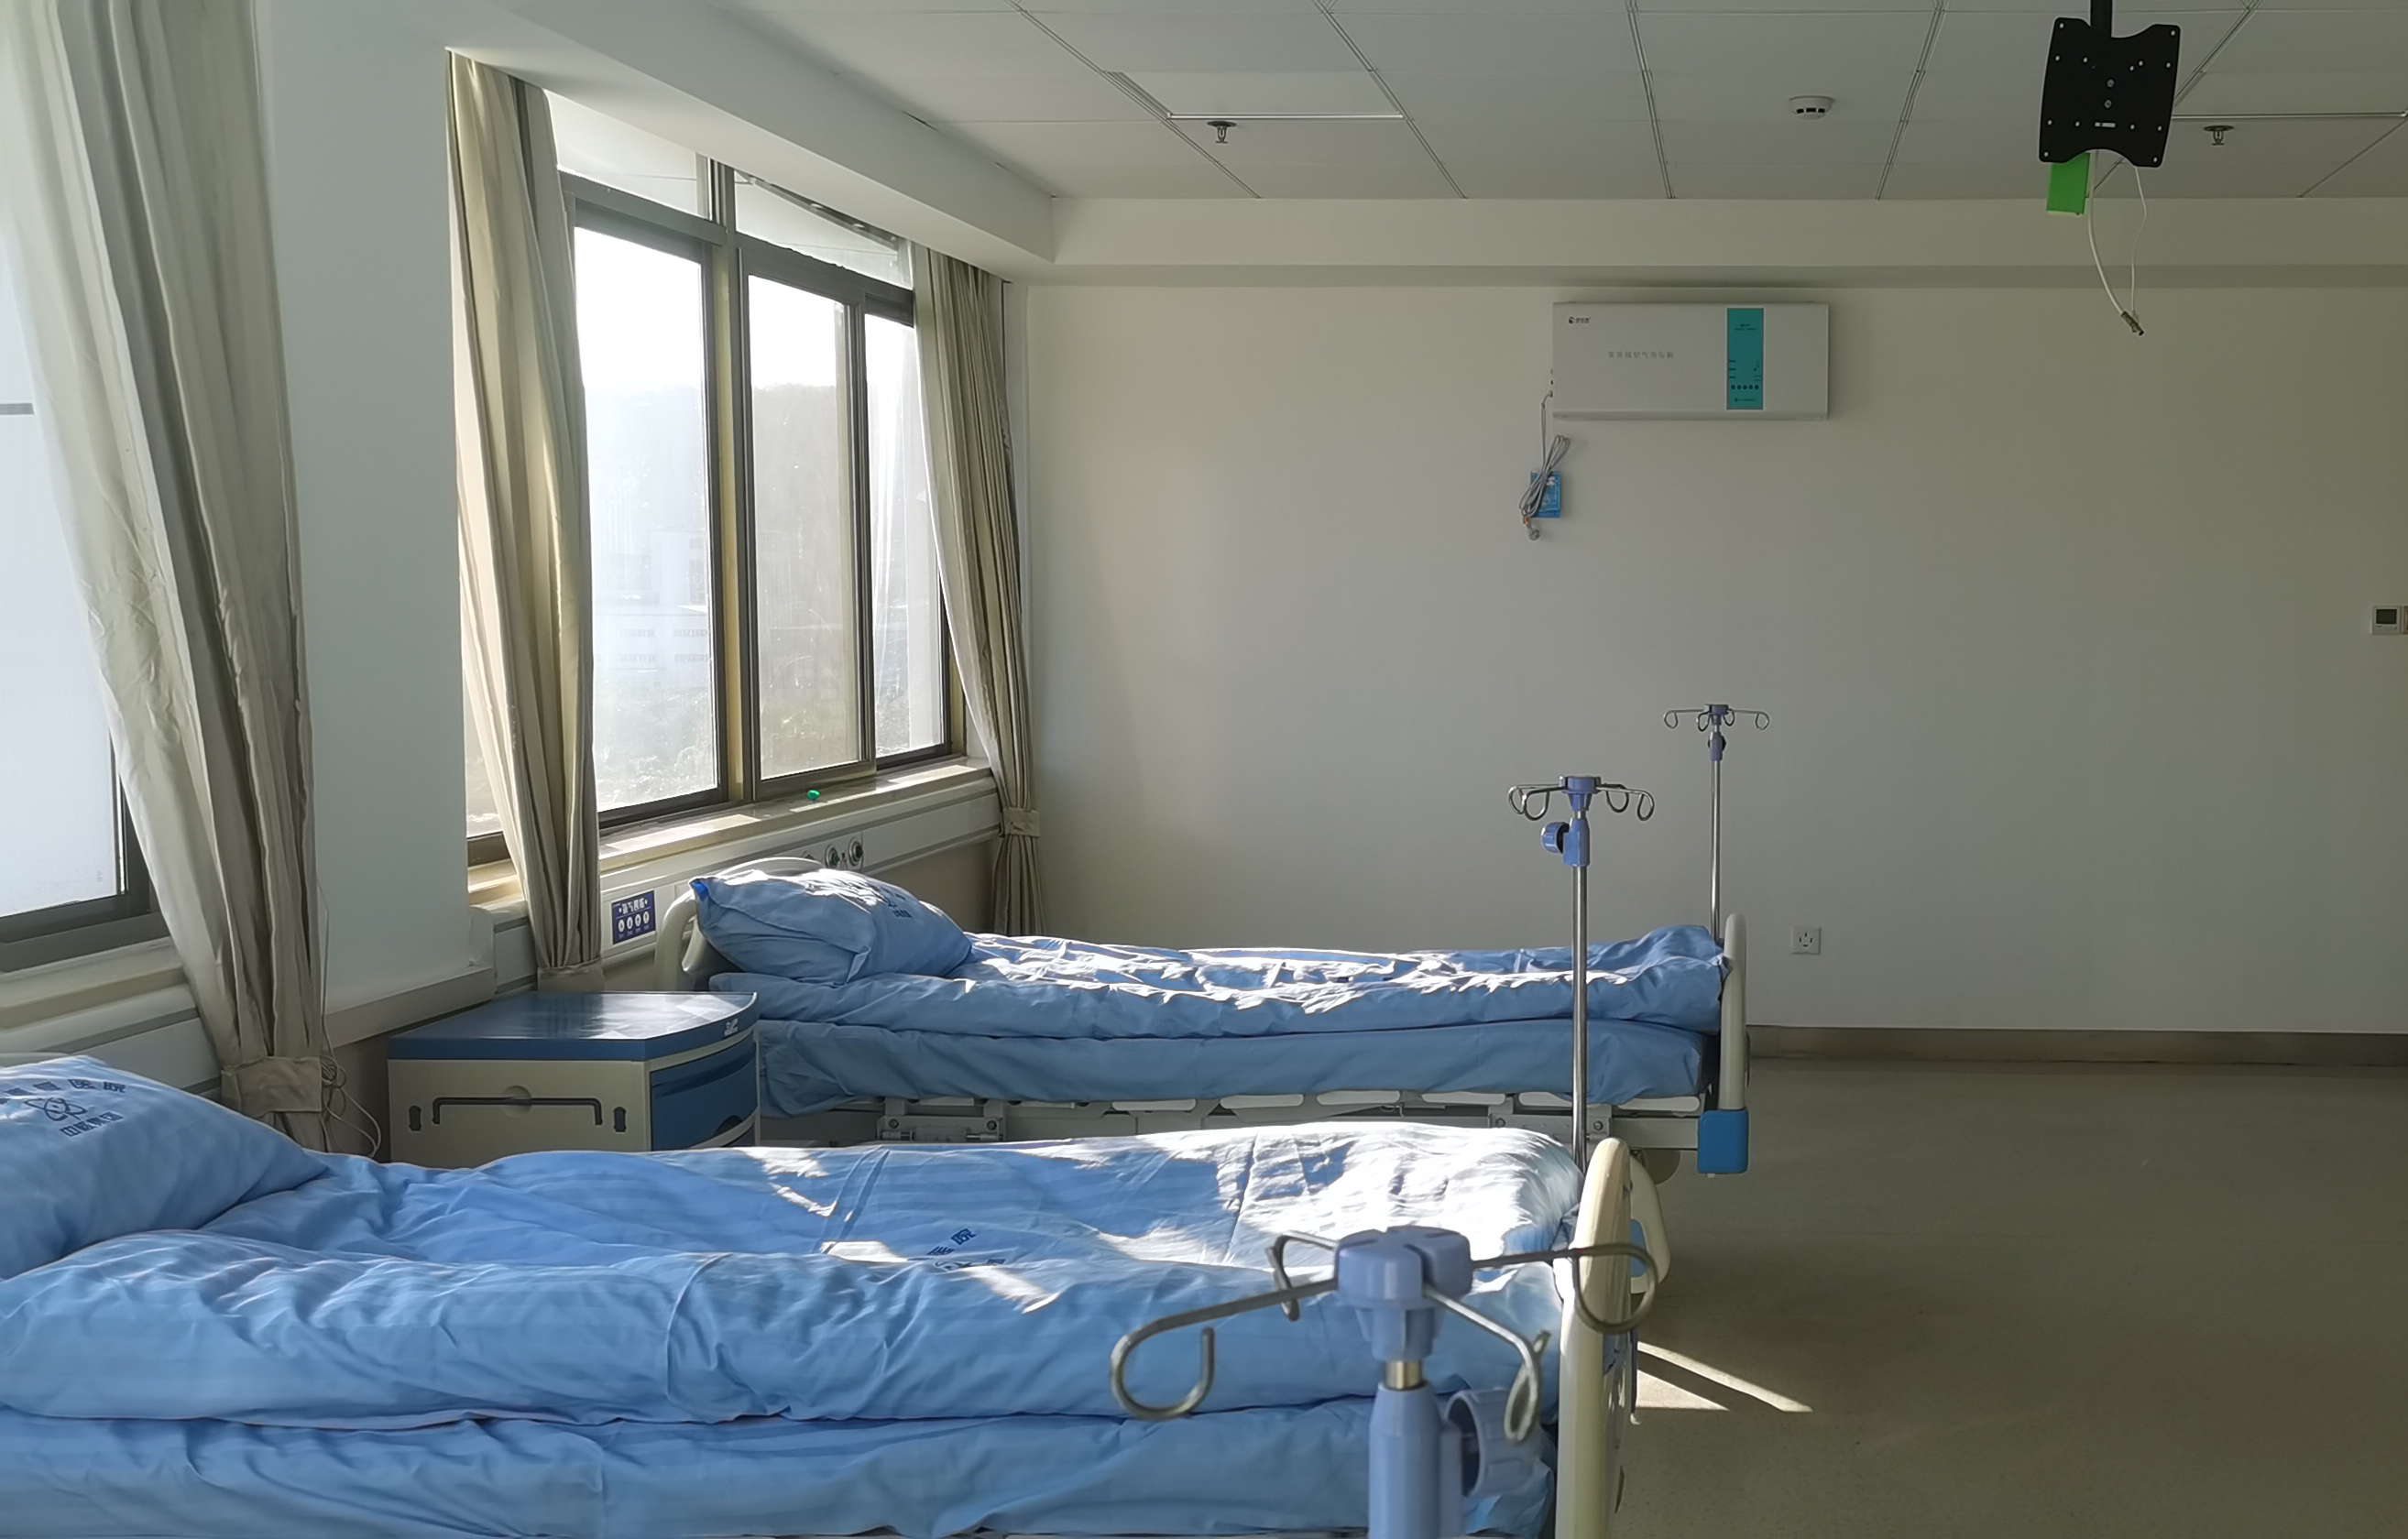 长沙中核康复医院空气消毒机安装与调试完成